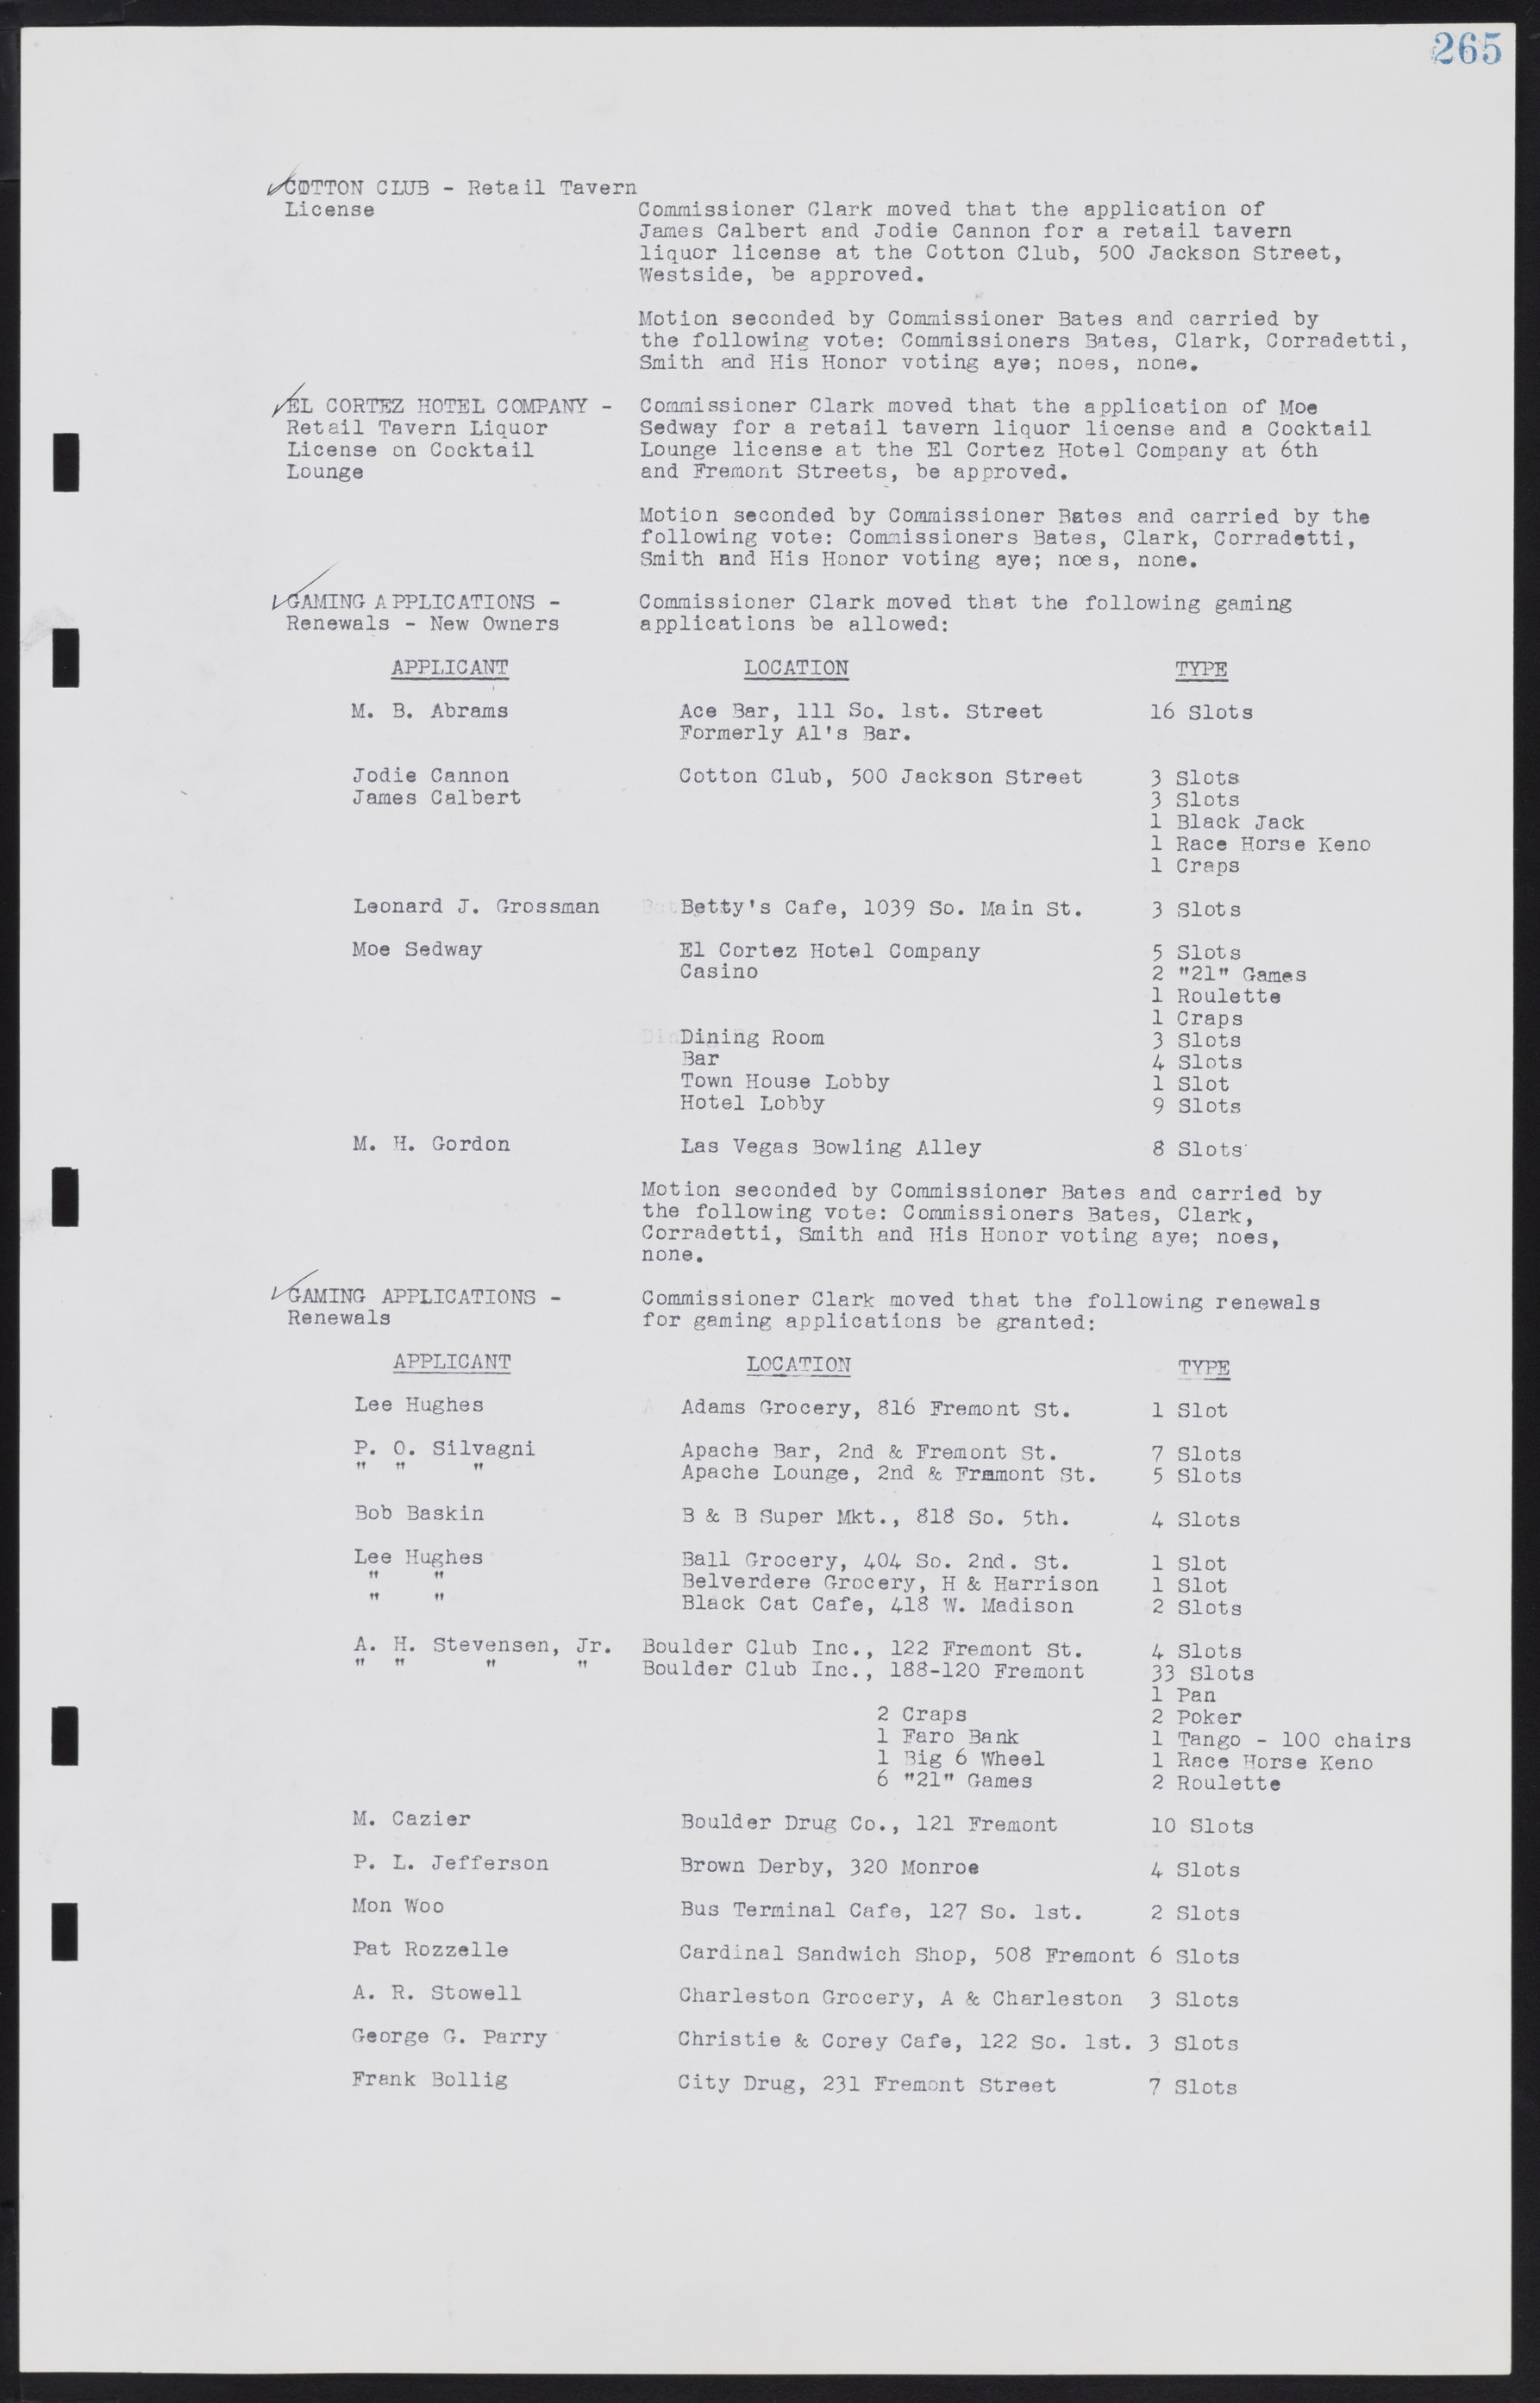 Las Vegas City Commission Minutes, August 11, 1942 to December 30, 1946, lvc000005-287